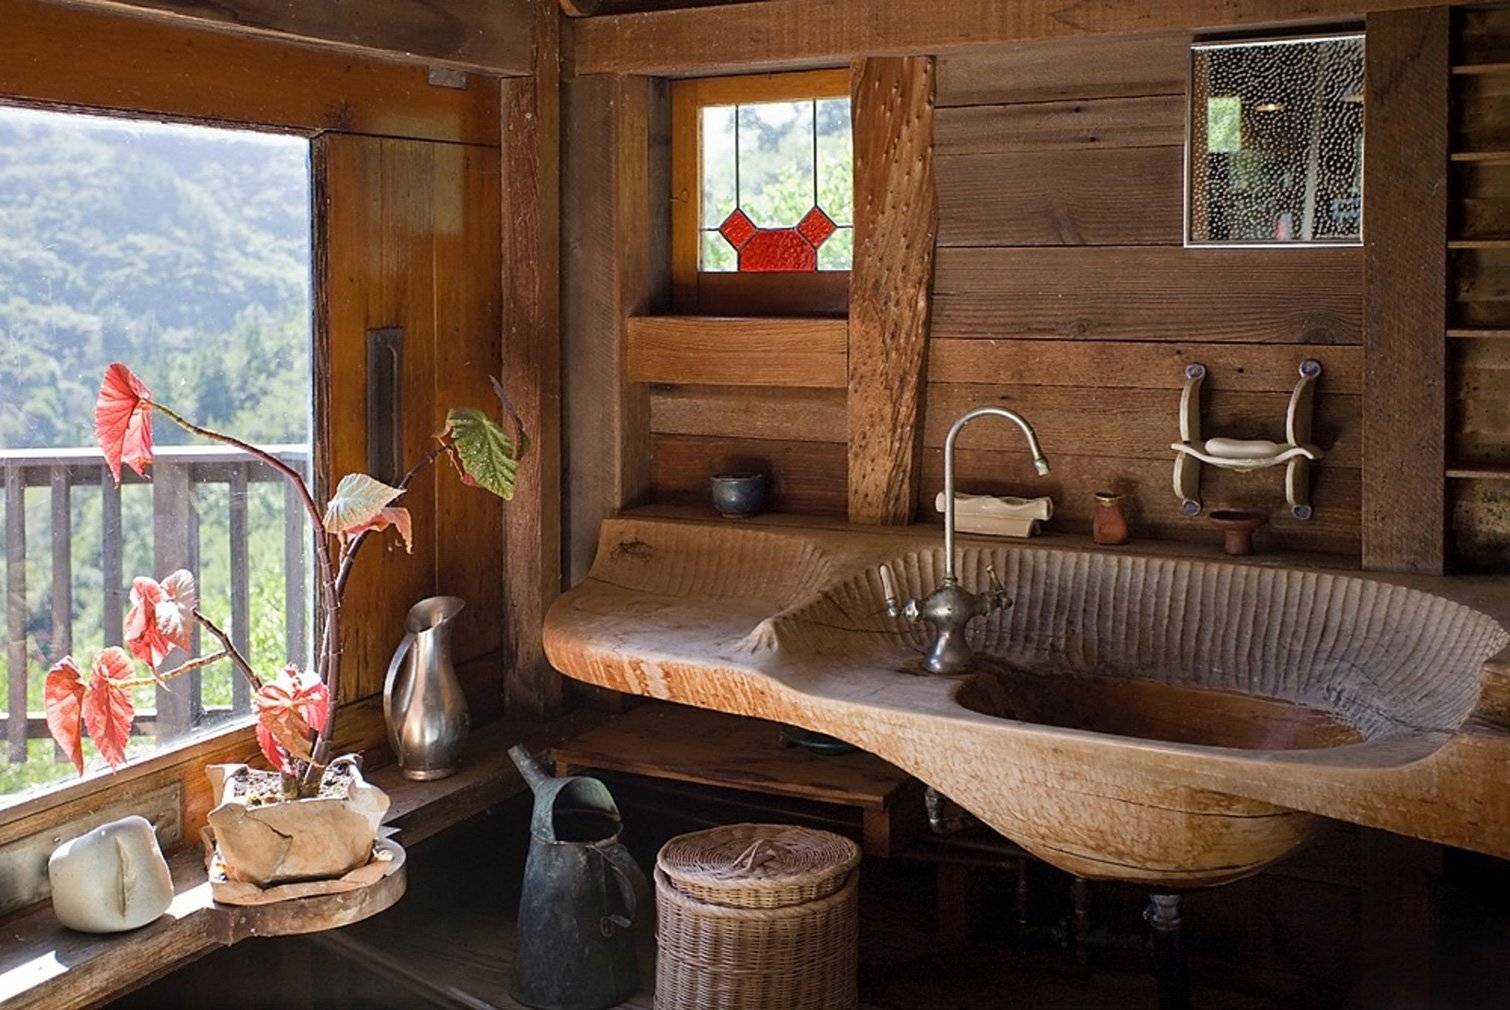 Отделка в ванной в деревянном доме: видео-инструкция